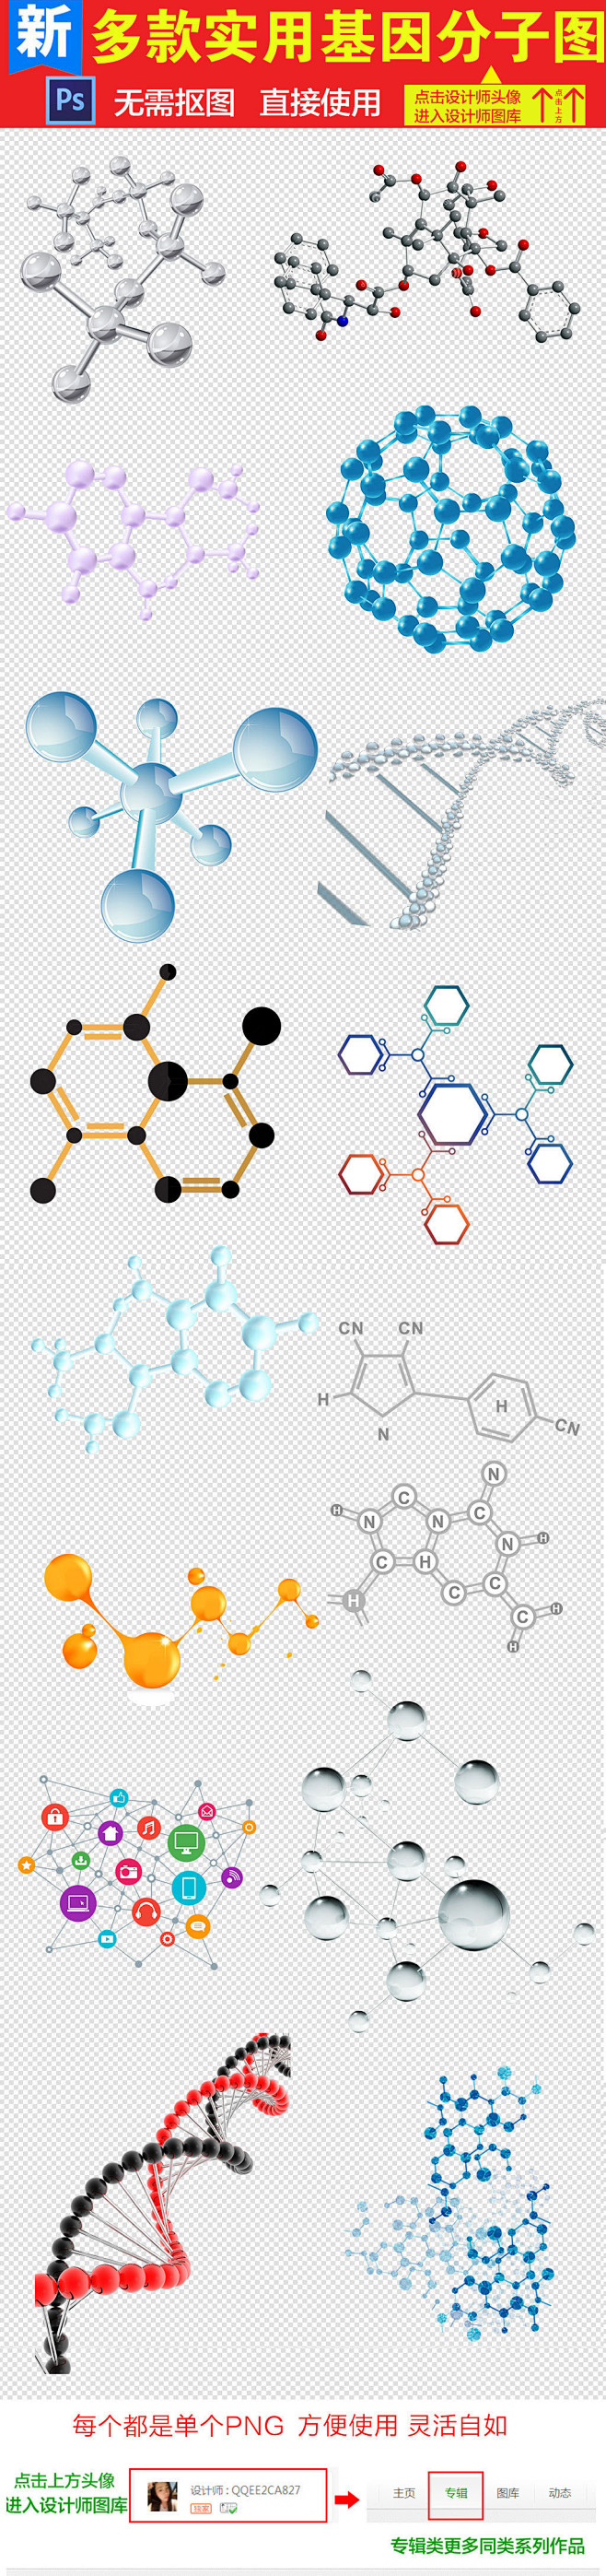 化1学生物科技创意基因分子结构素材